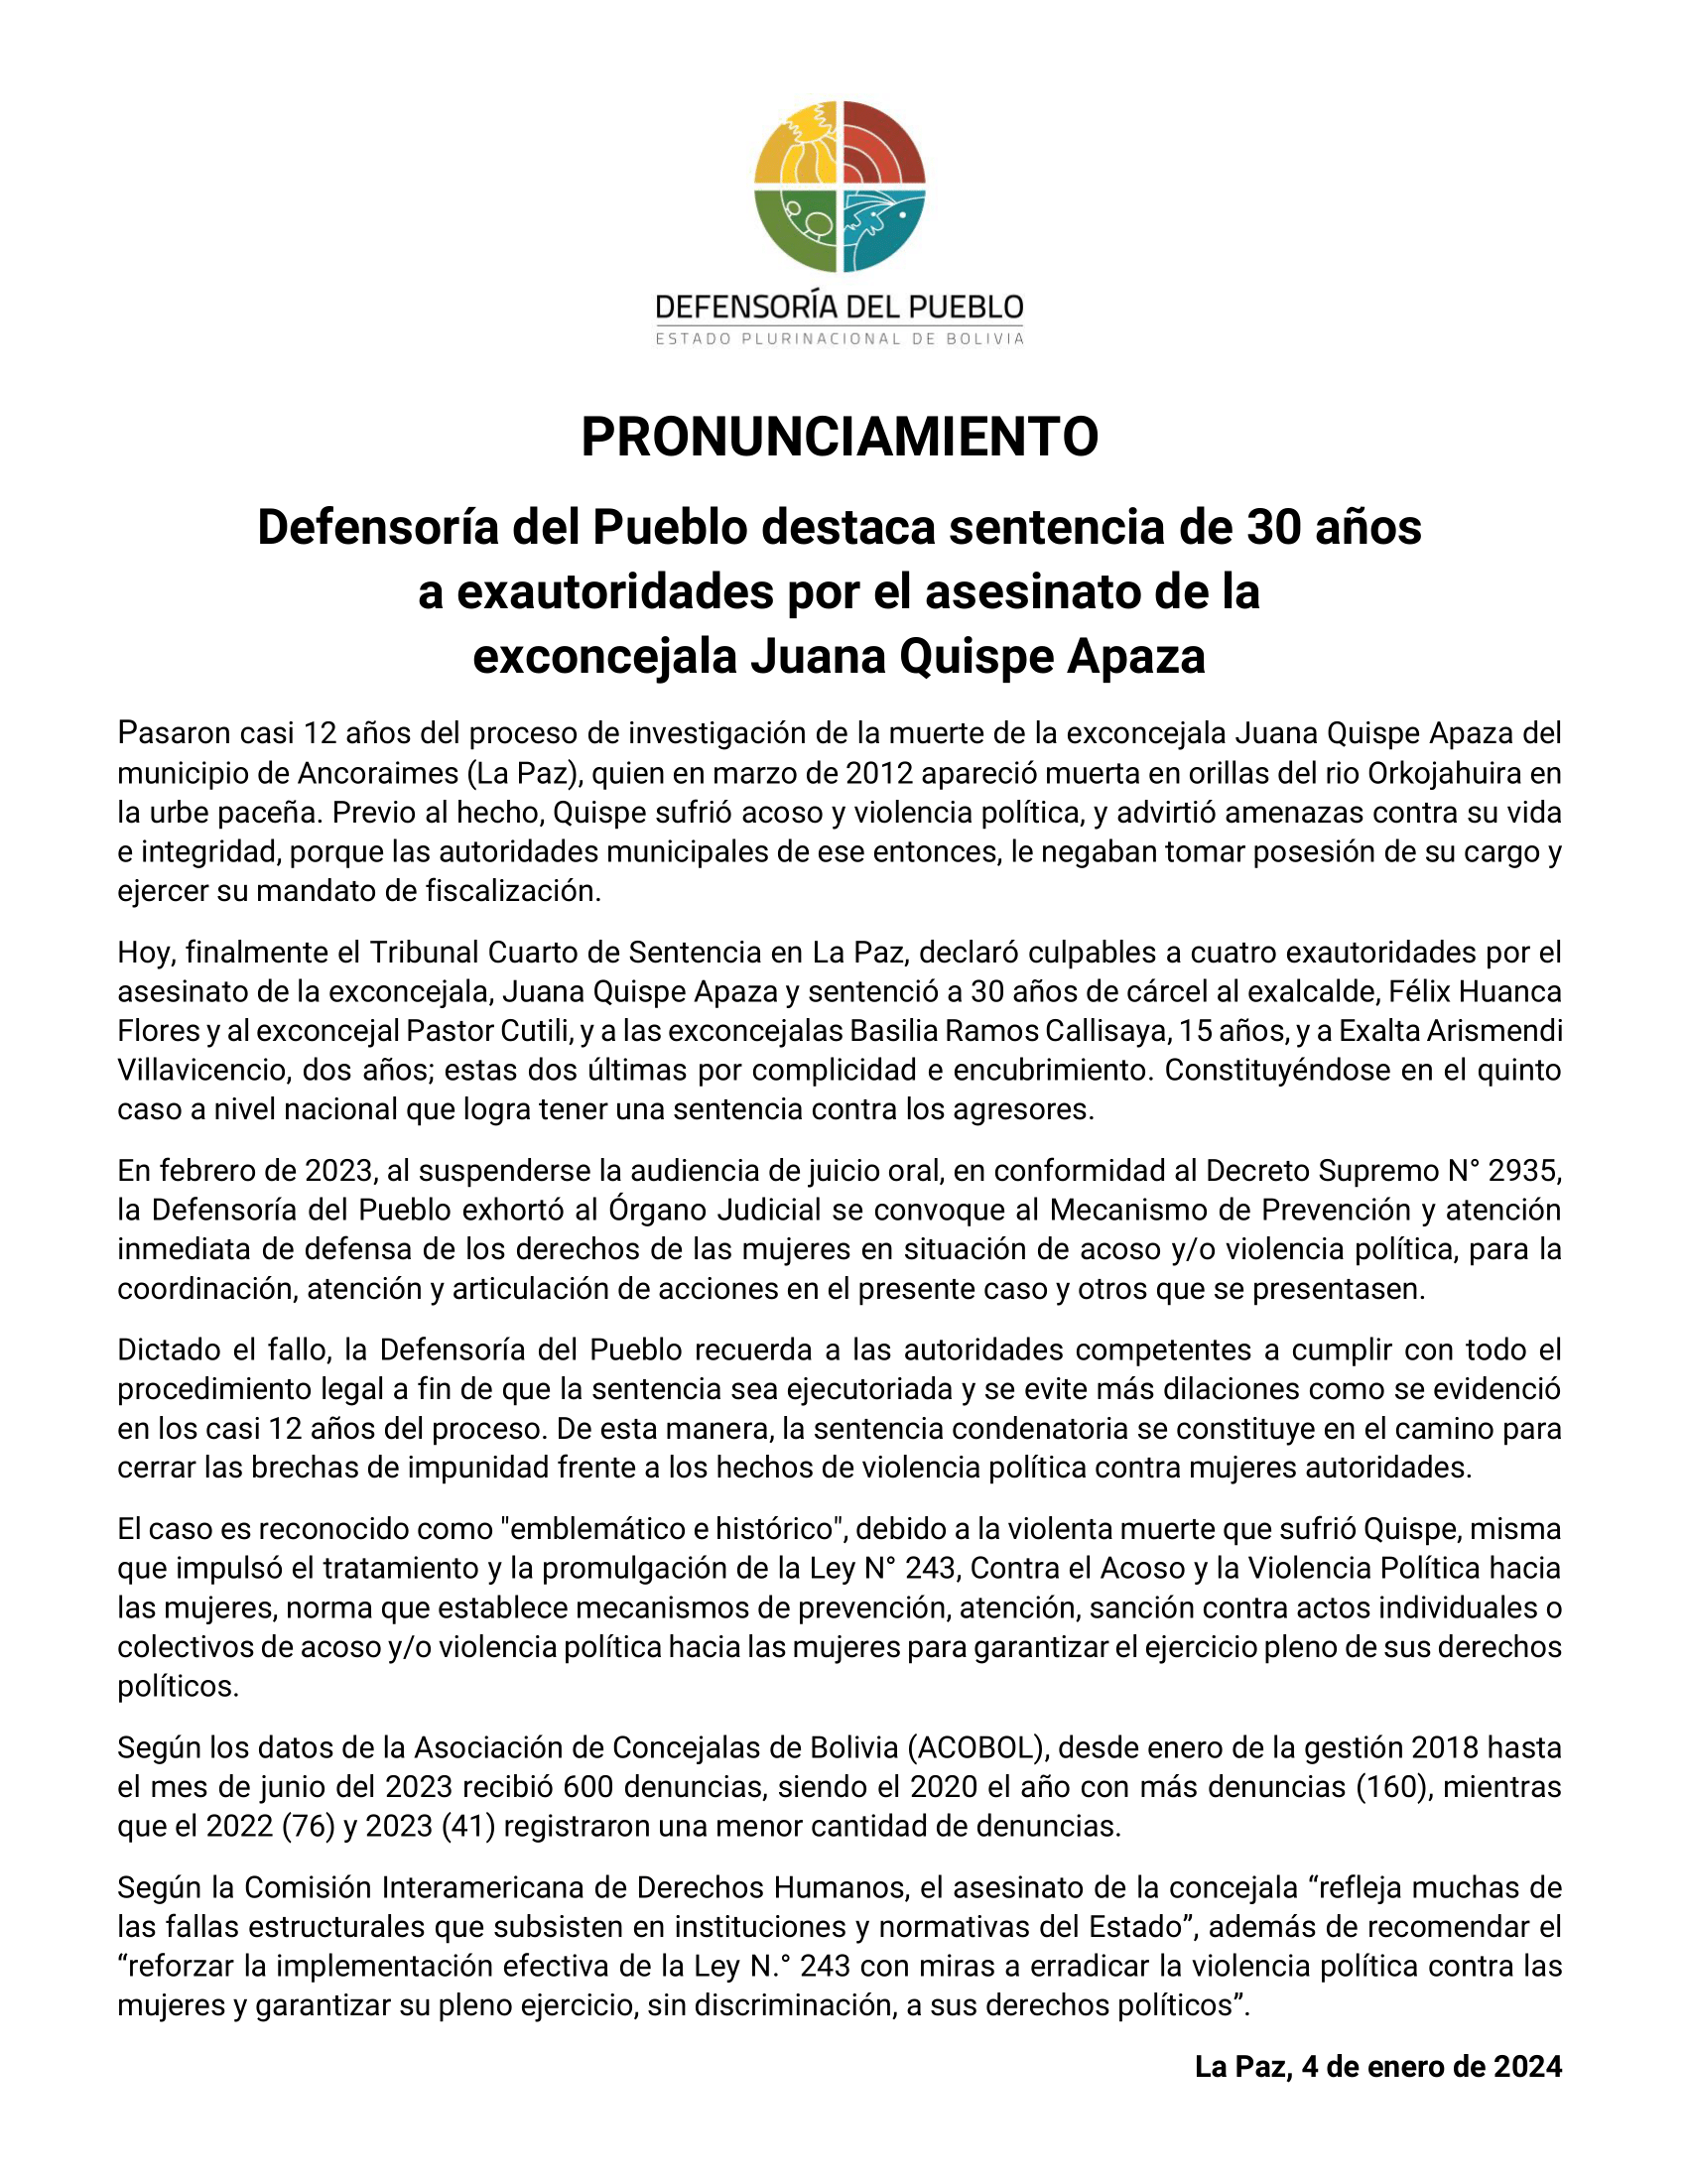 Defensoría del Pueblo destaca sentencia de 30 años a exautoridades por el asesinato de la exconcejala Juana Quispe Apaza